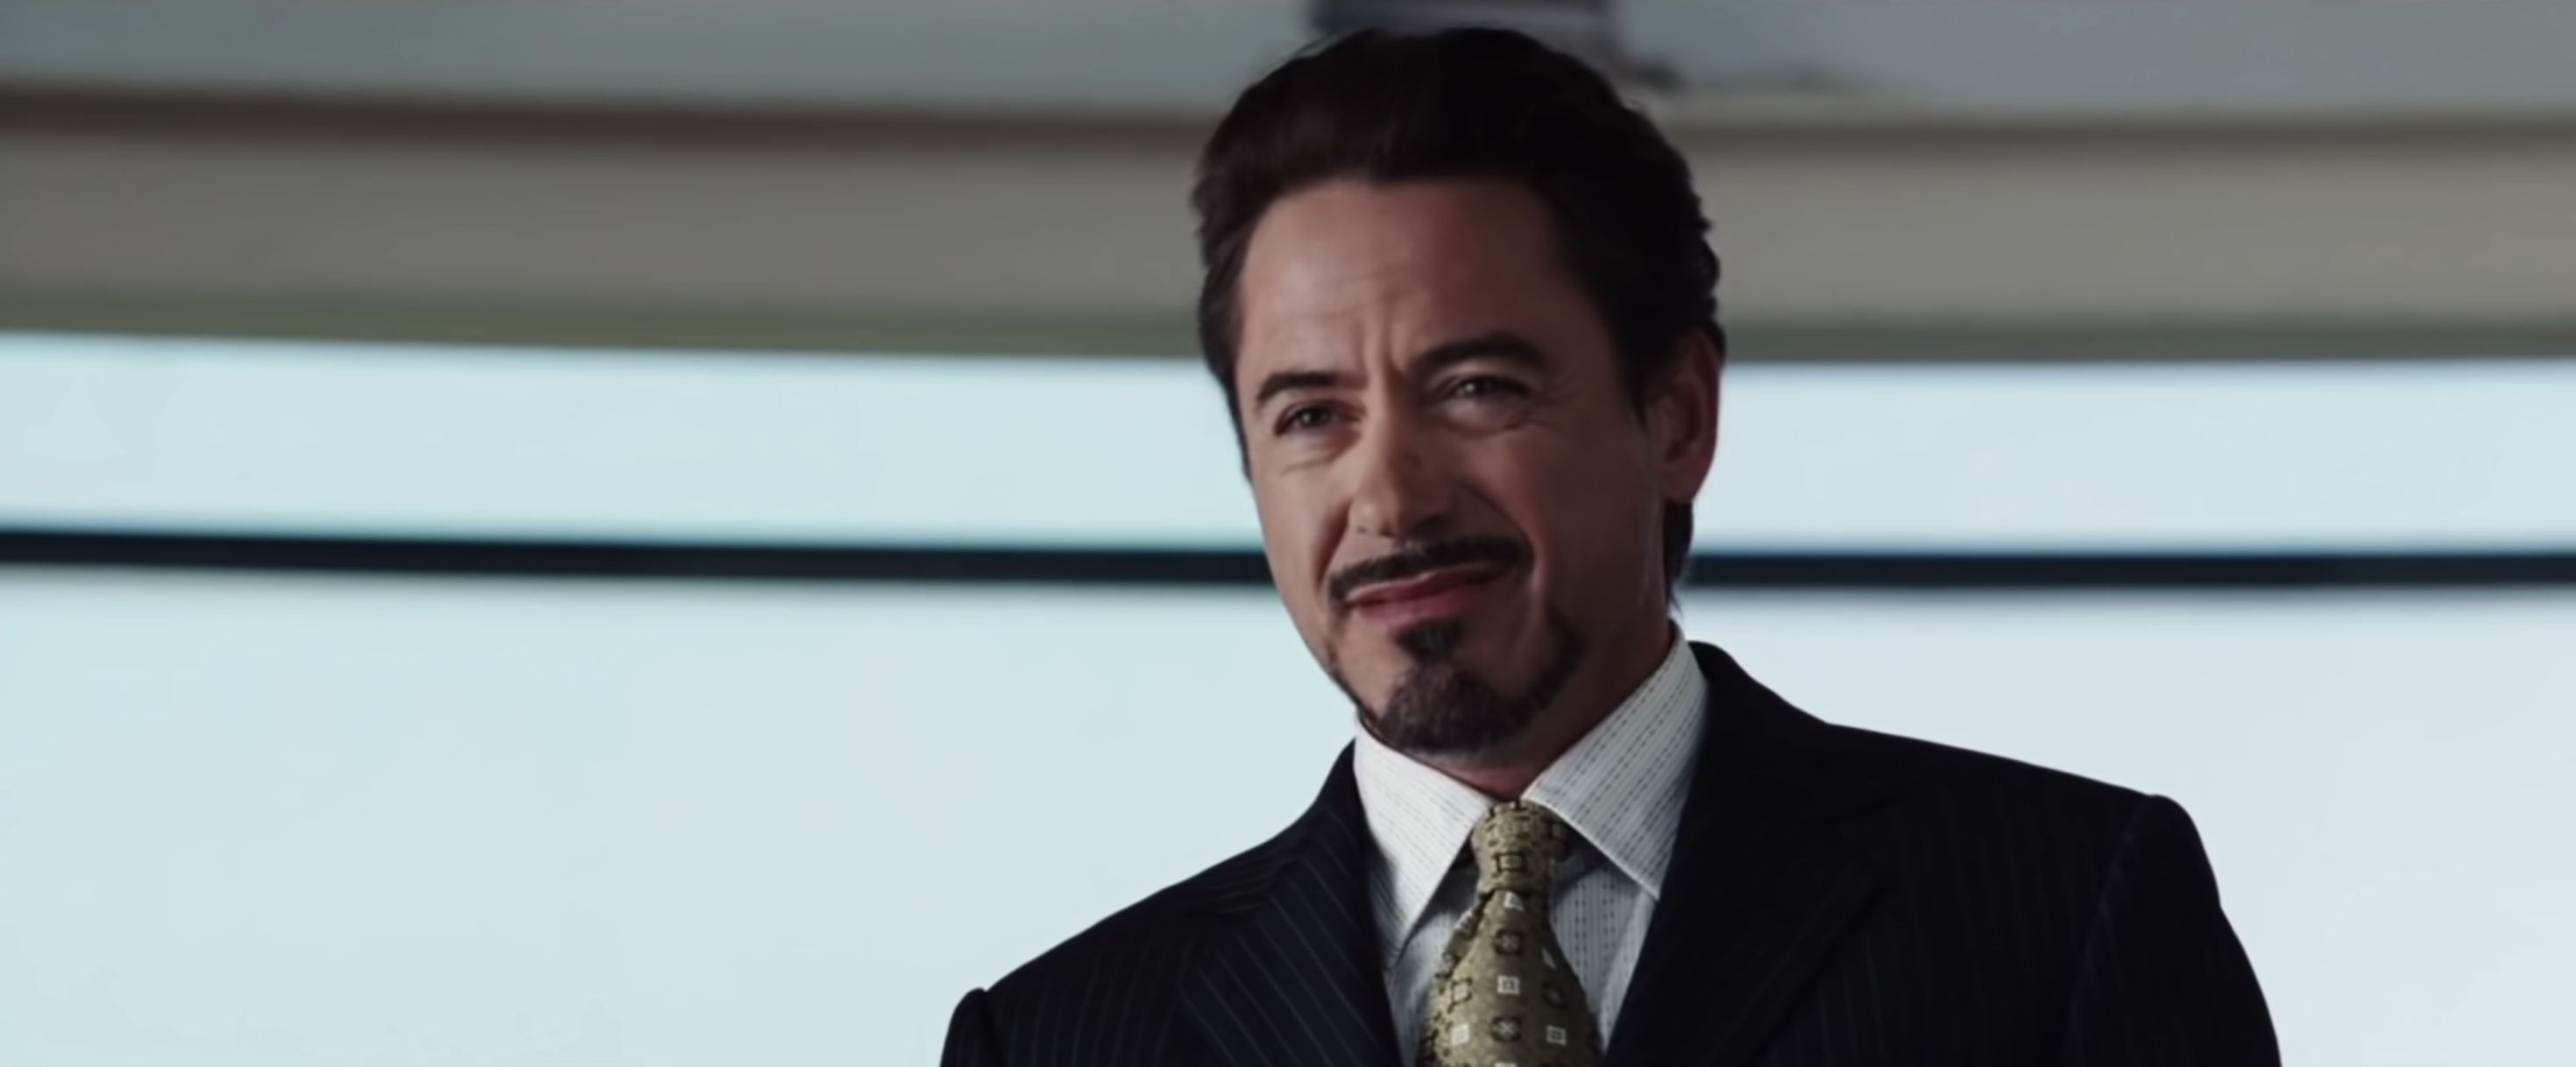 Tony Stark at a press conference